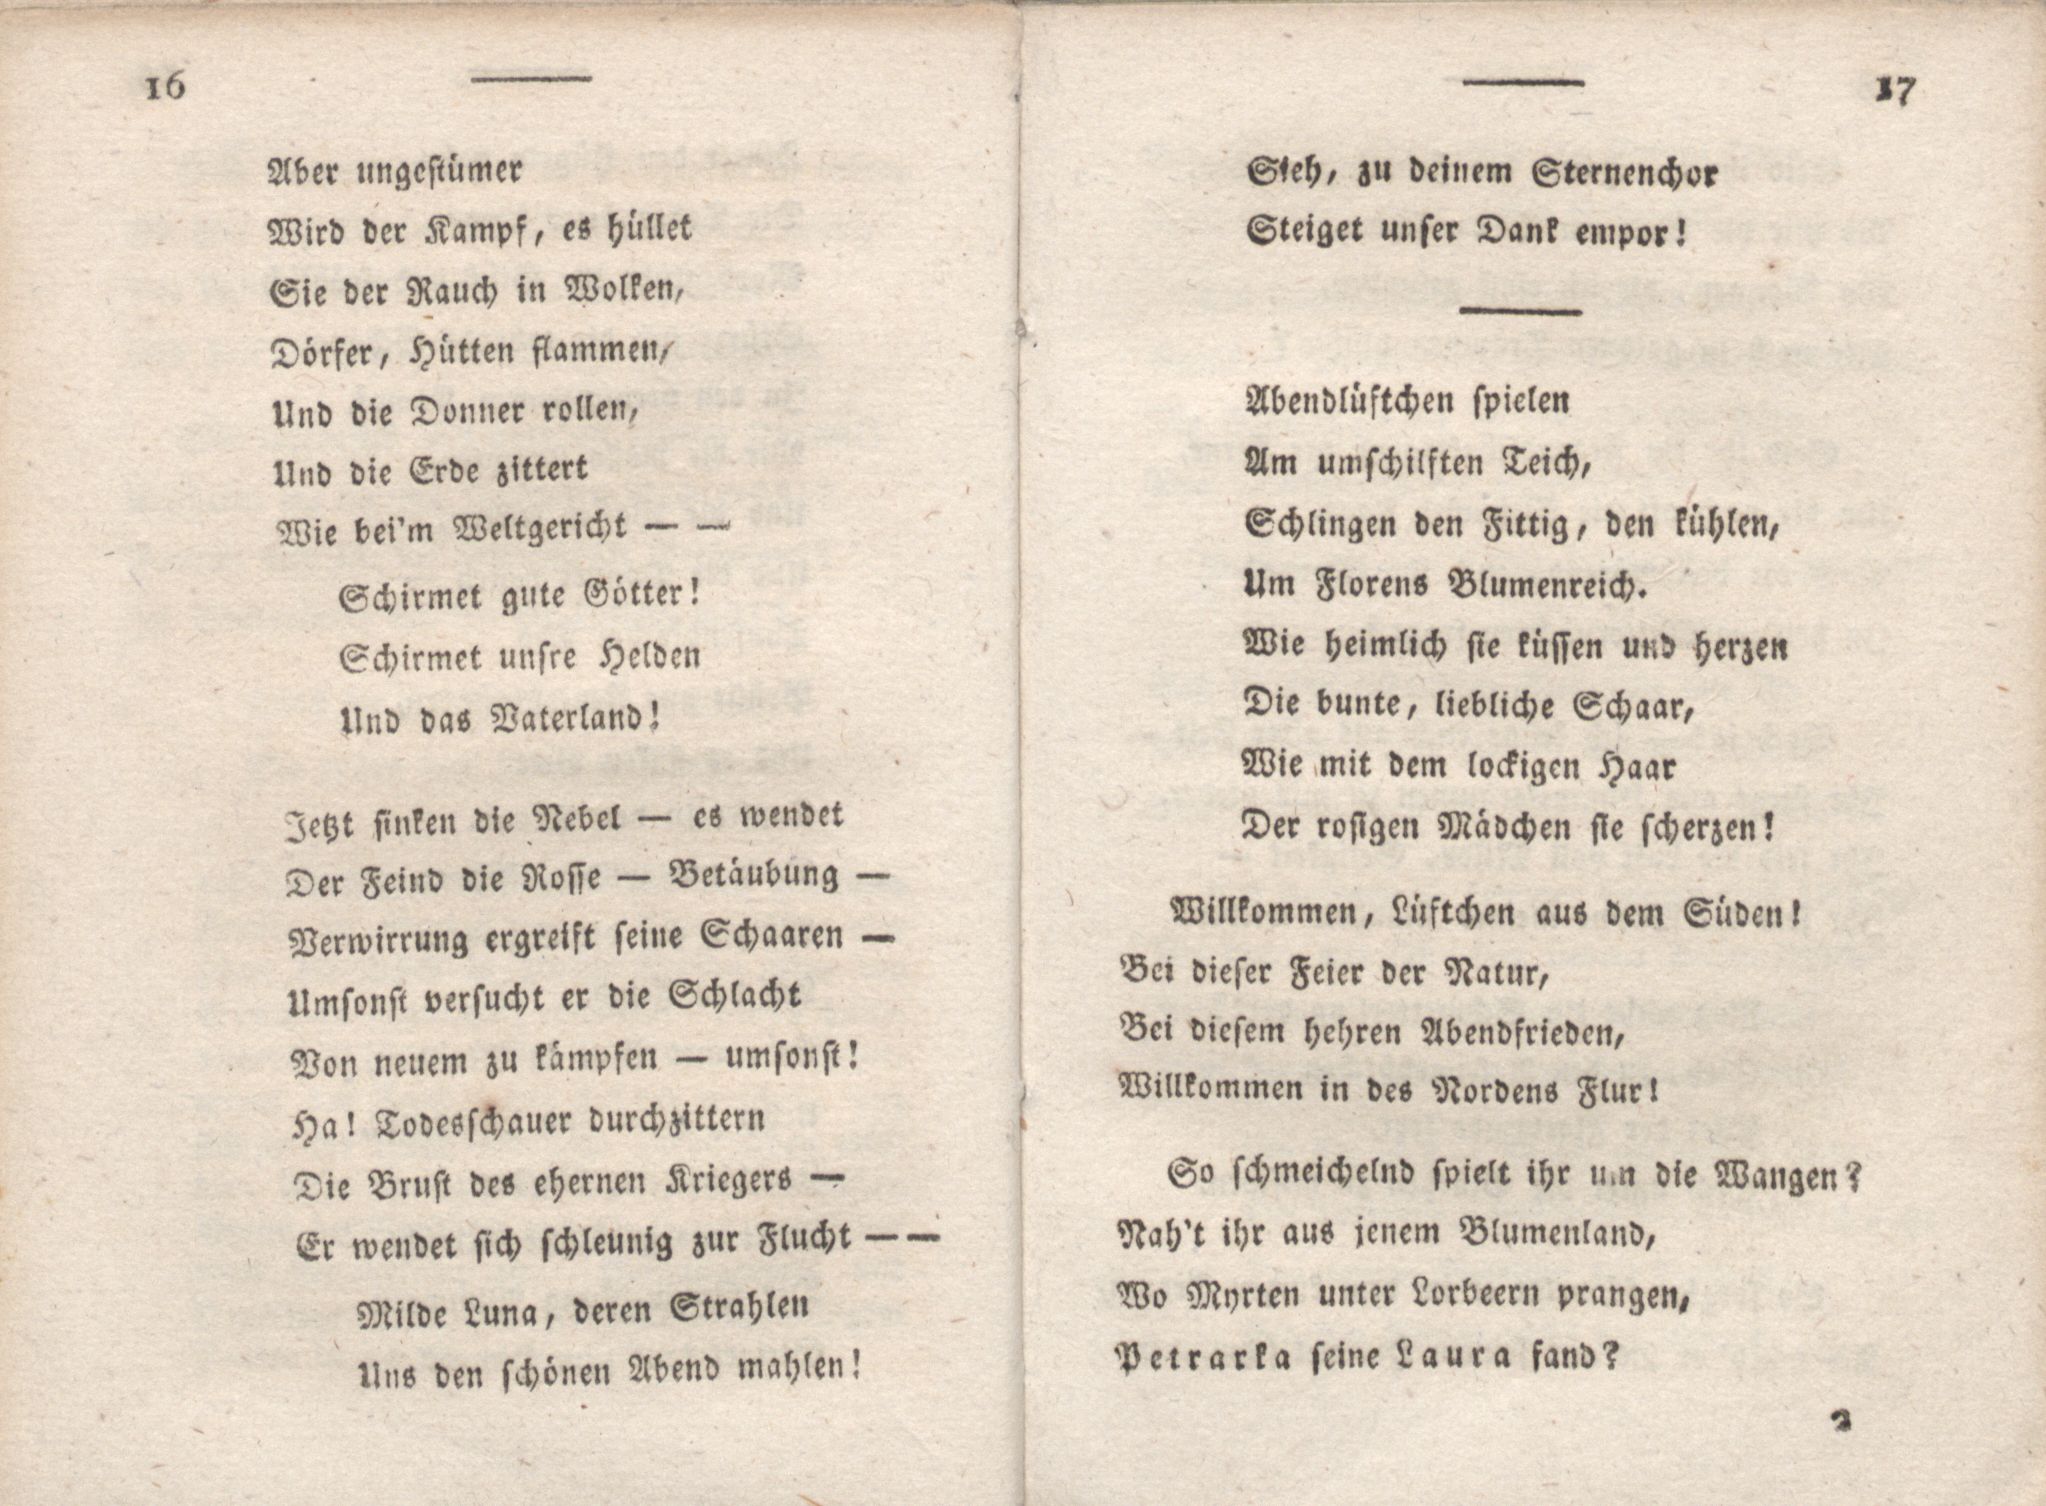 Livona [2] (1815) | 18. (16-17) Main body of text